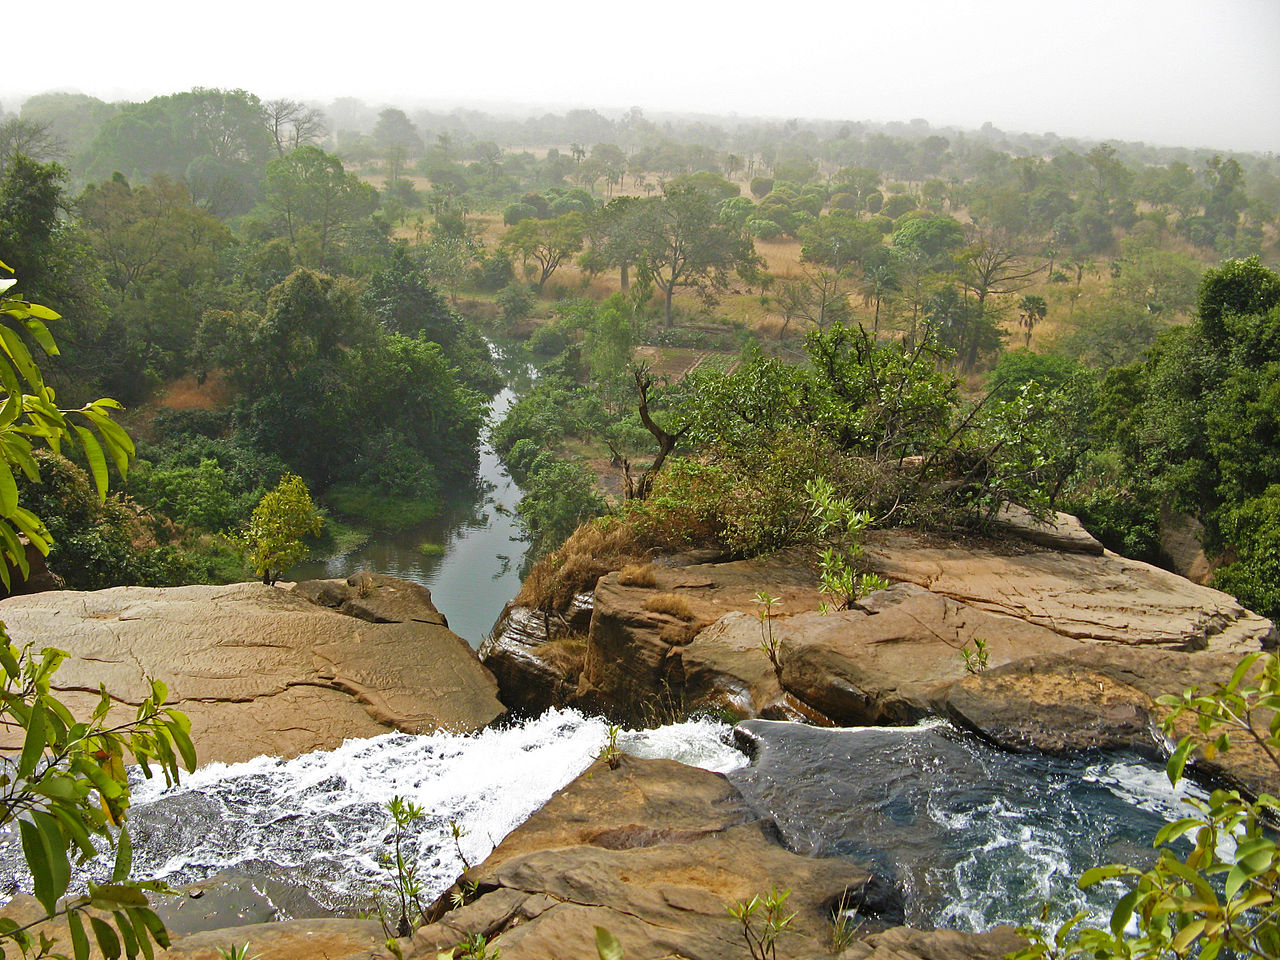 Cascades de Karfiguela, Burkina Faso